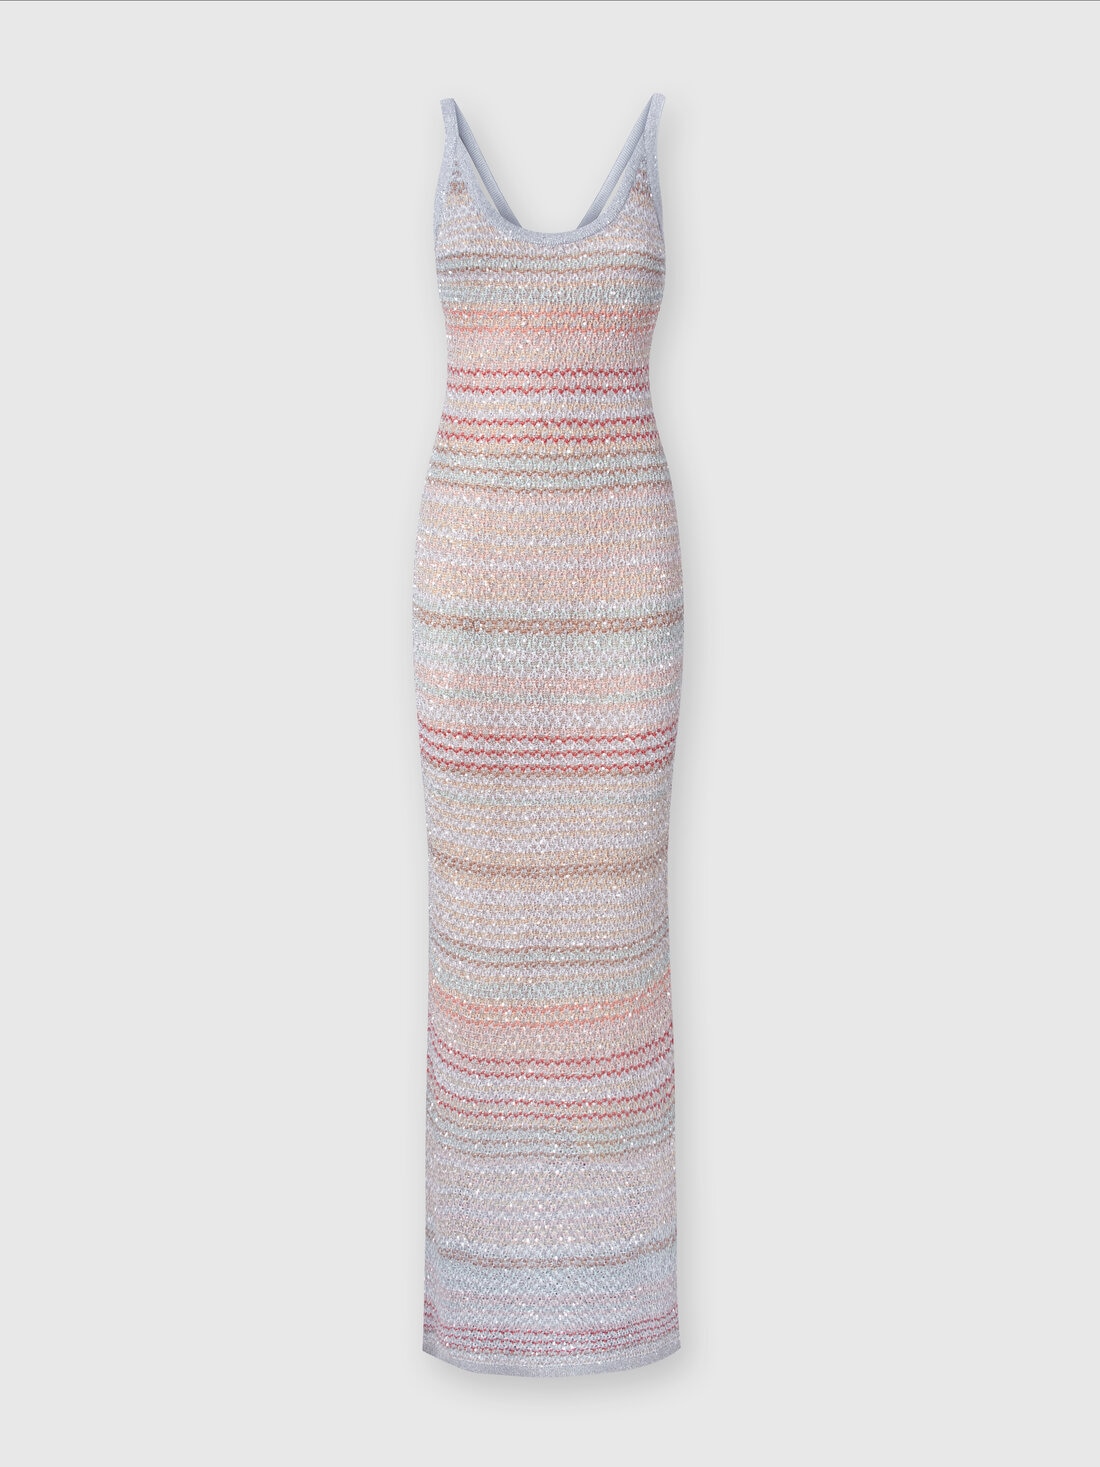 Robe longue en mailles à zig zag avec texture effet tricoté, Multicolore  - DS24SG14BK033PSM9AI - 0